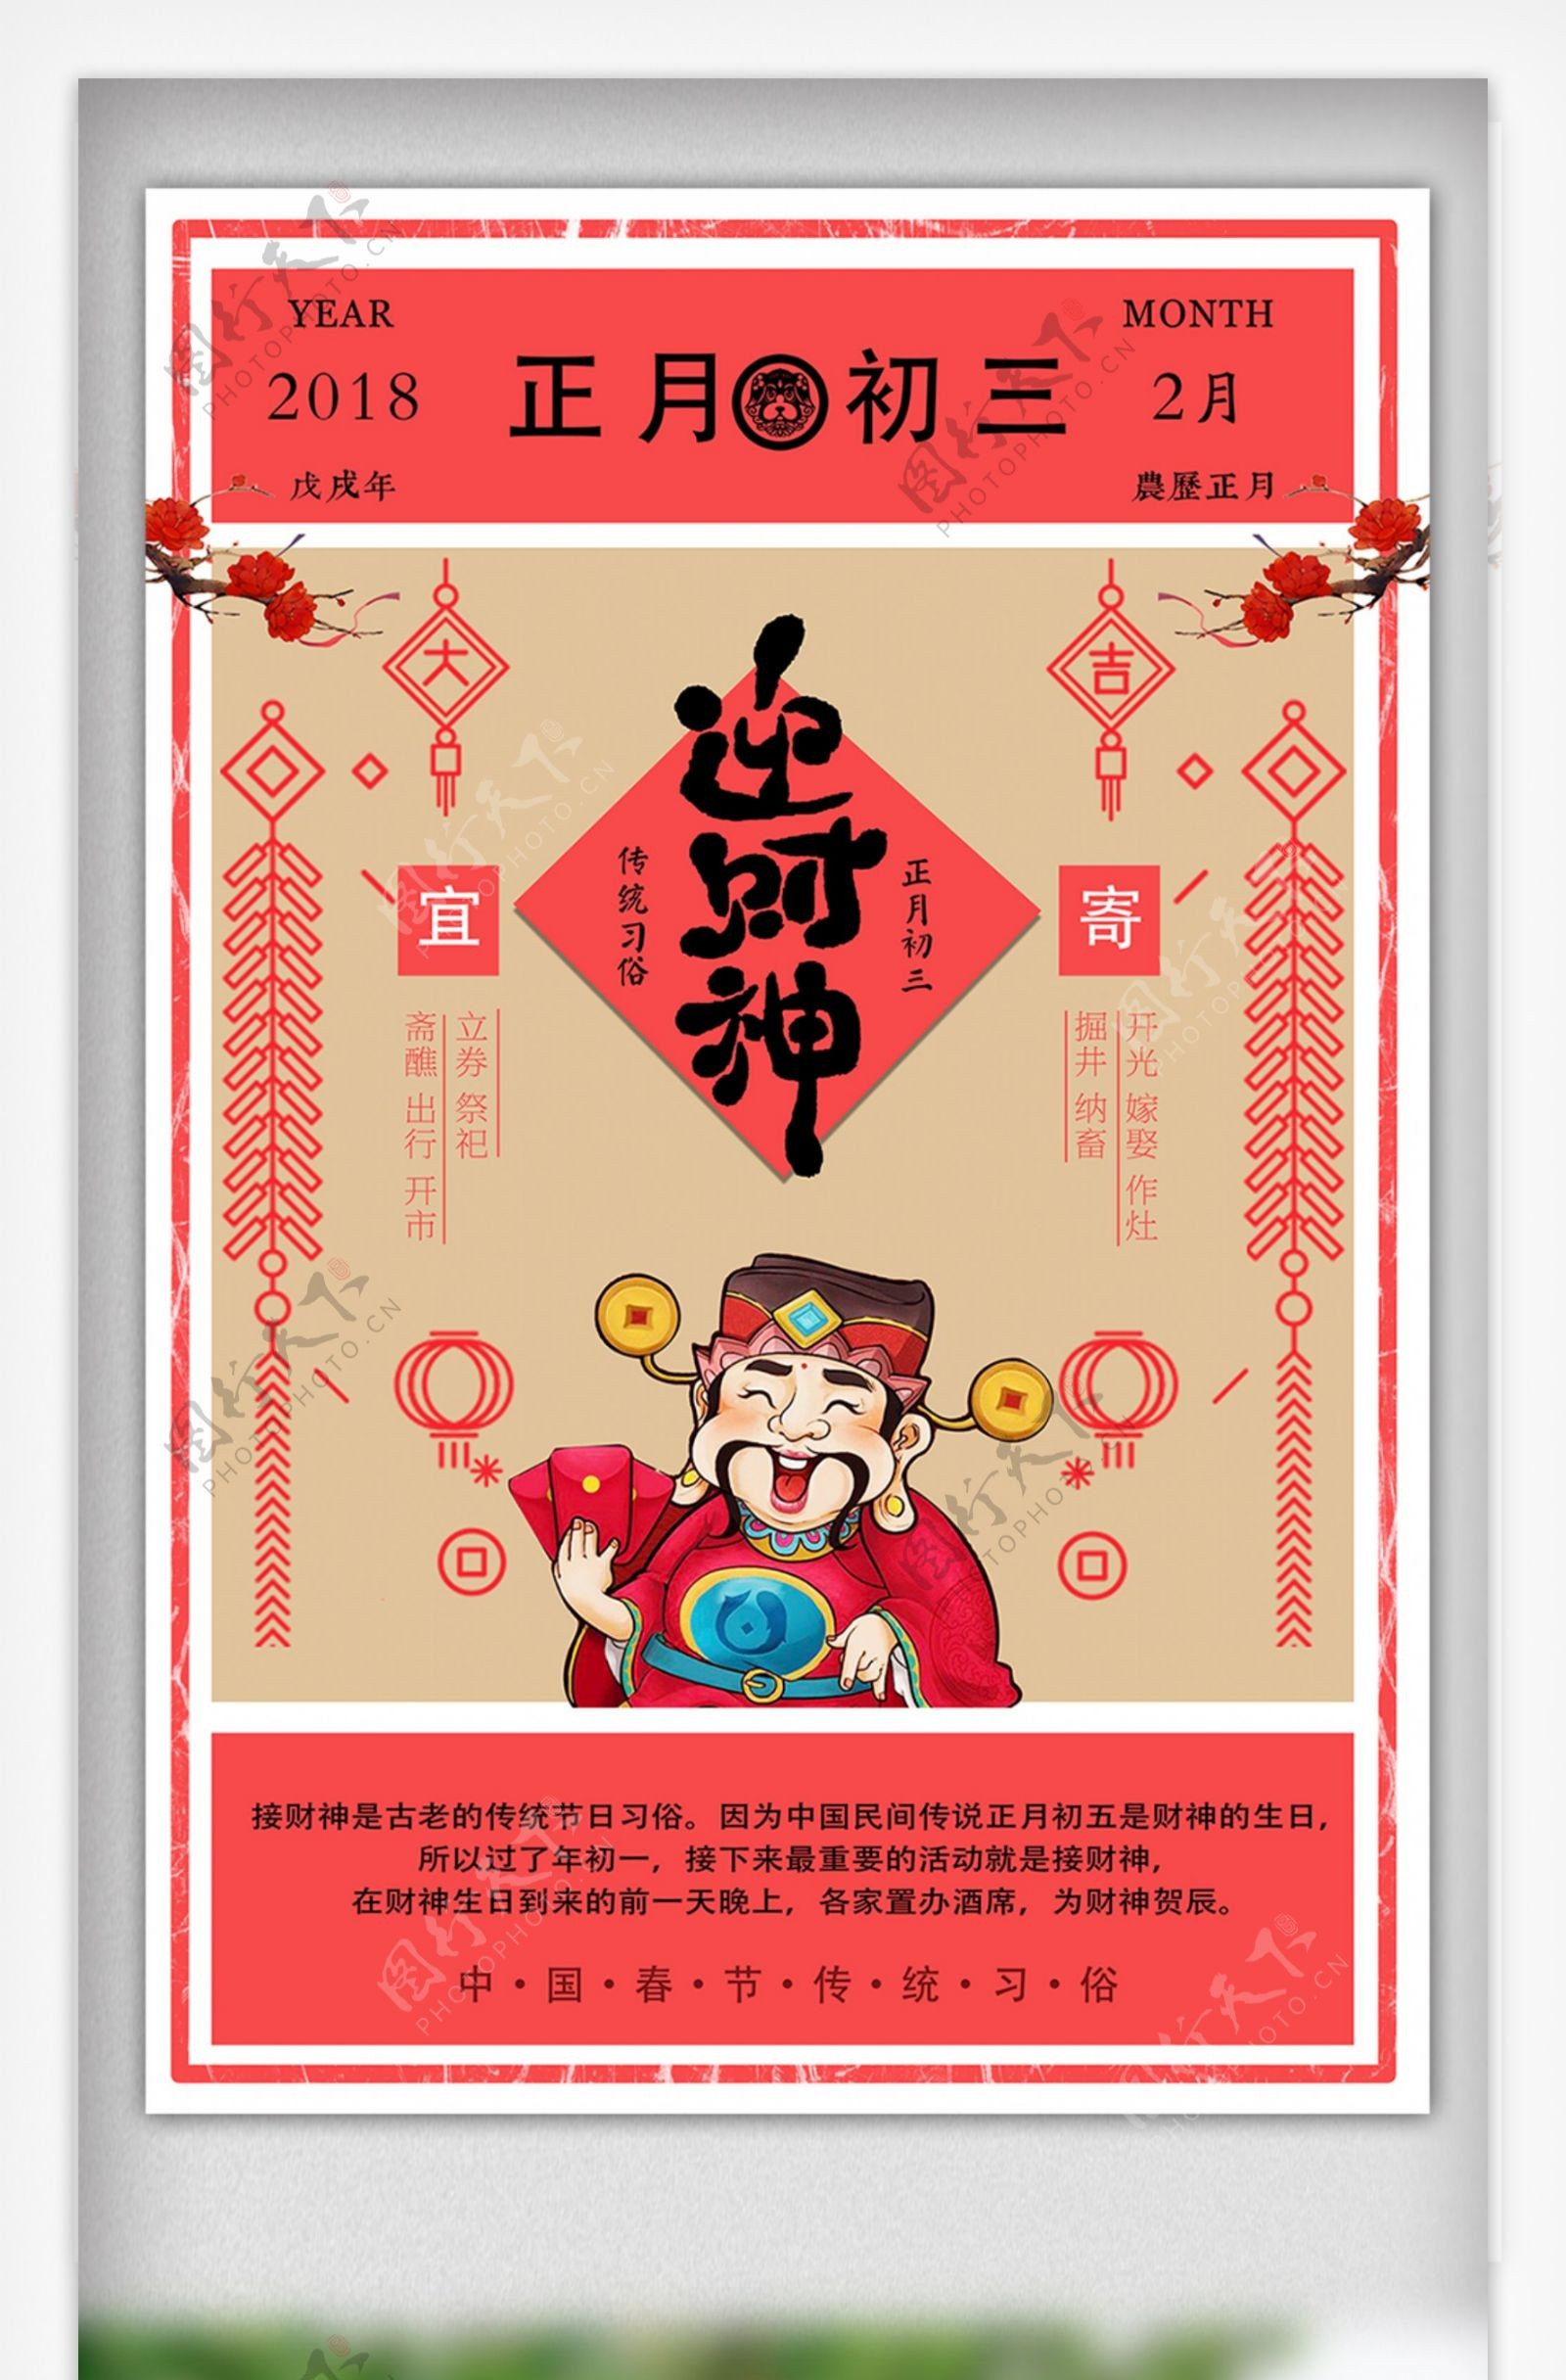 2018传统节日正月初五迎财神